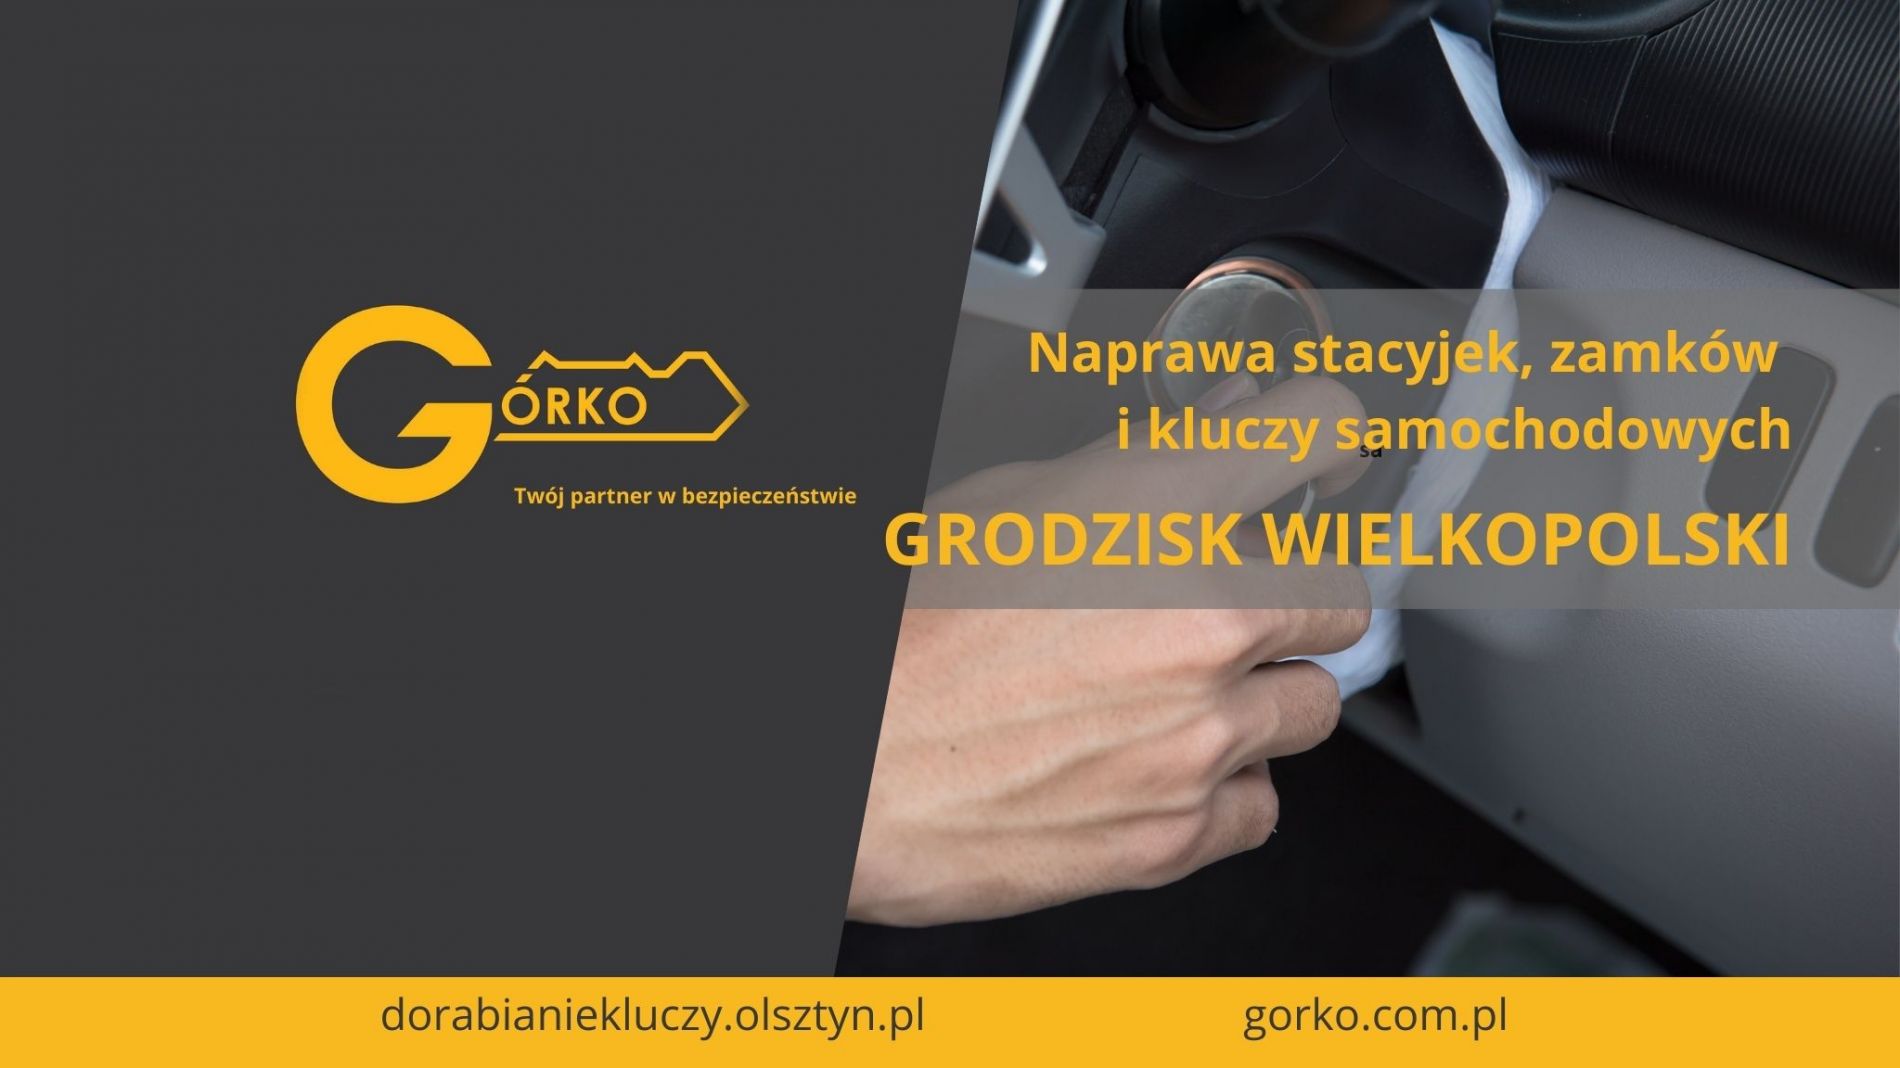 Naprawa stacyjek, zamków i kluczy samochodowych – Grodzisk Wielkopolski (Usługa zdalna)